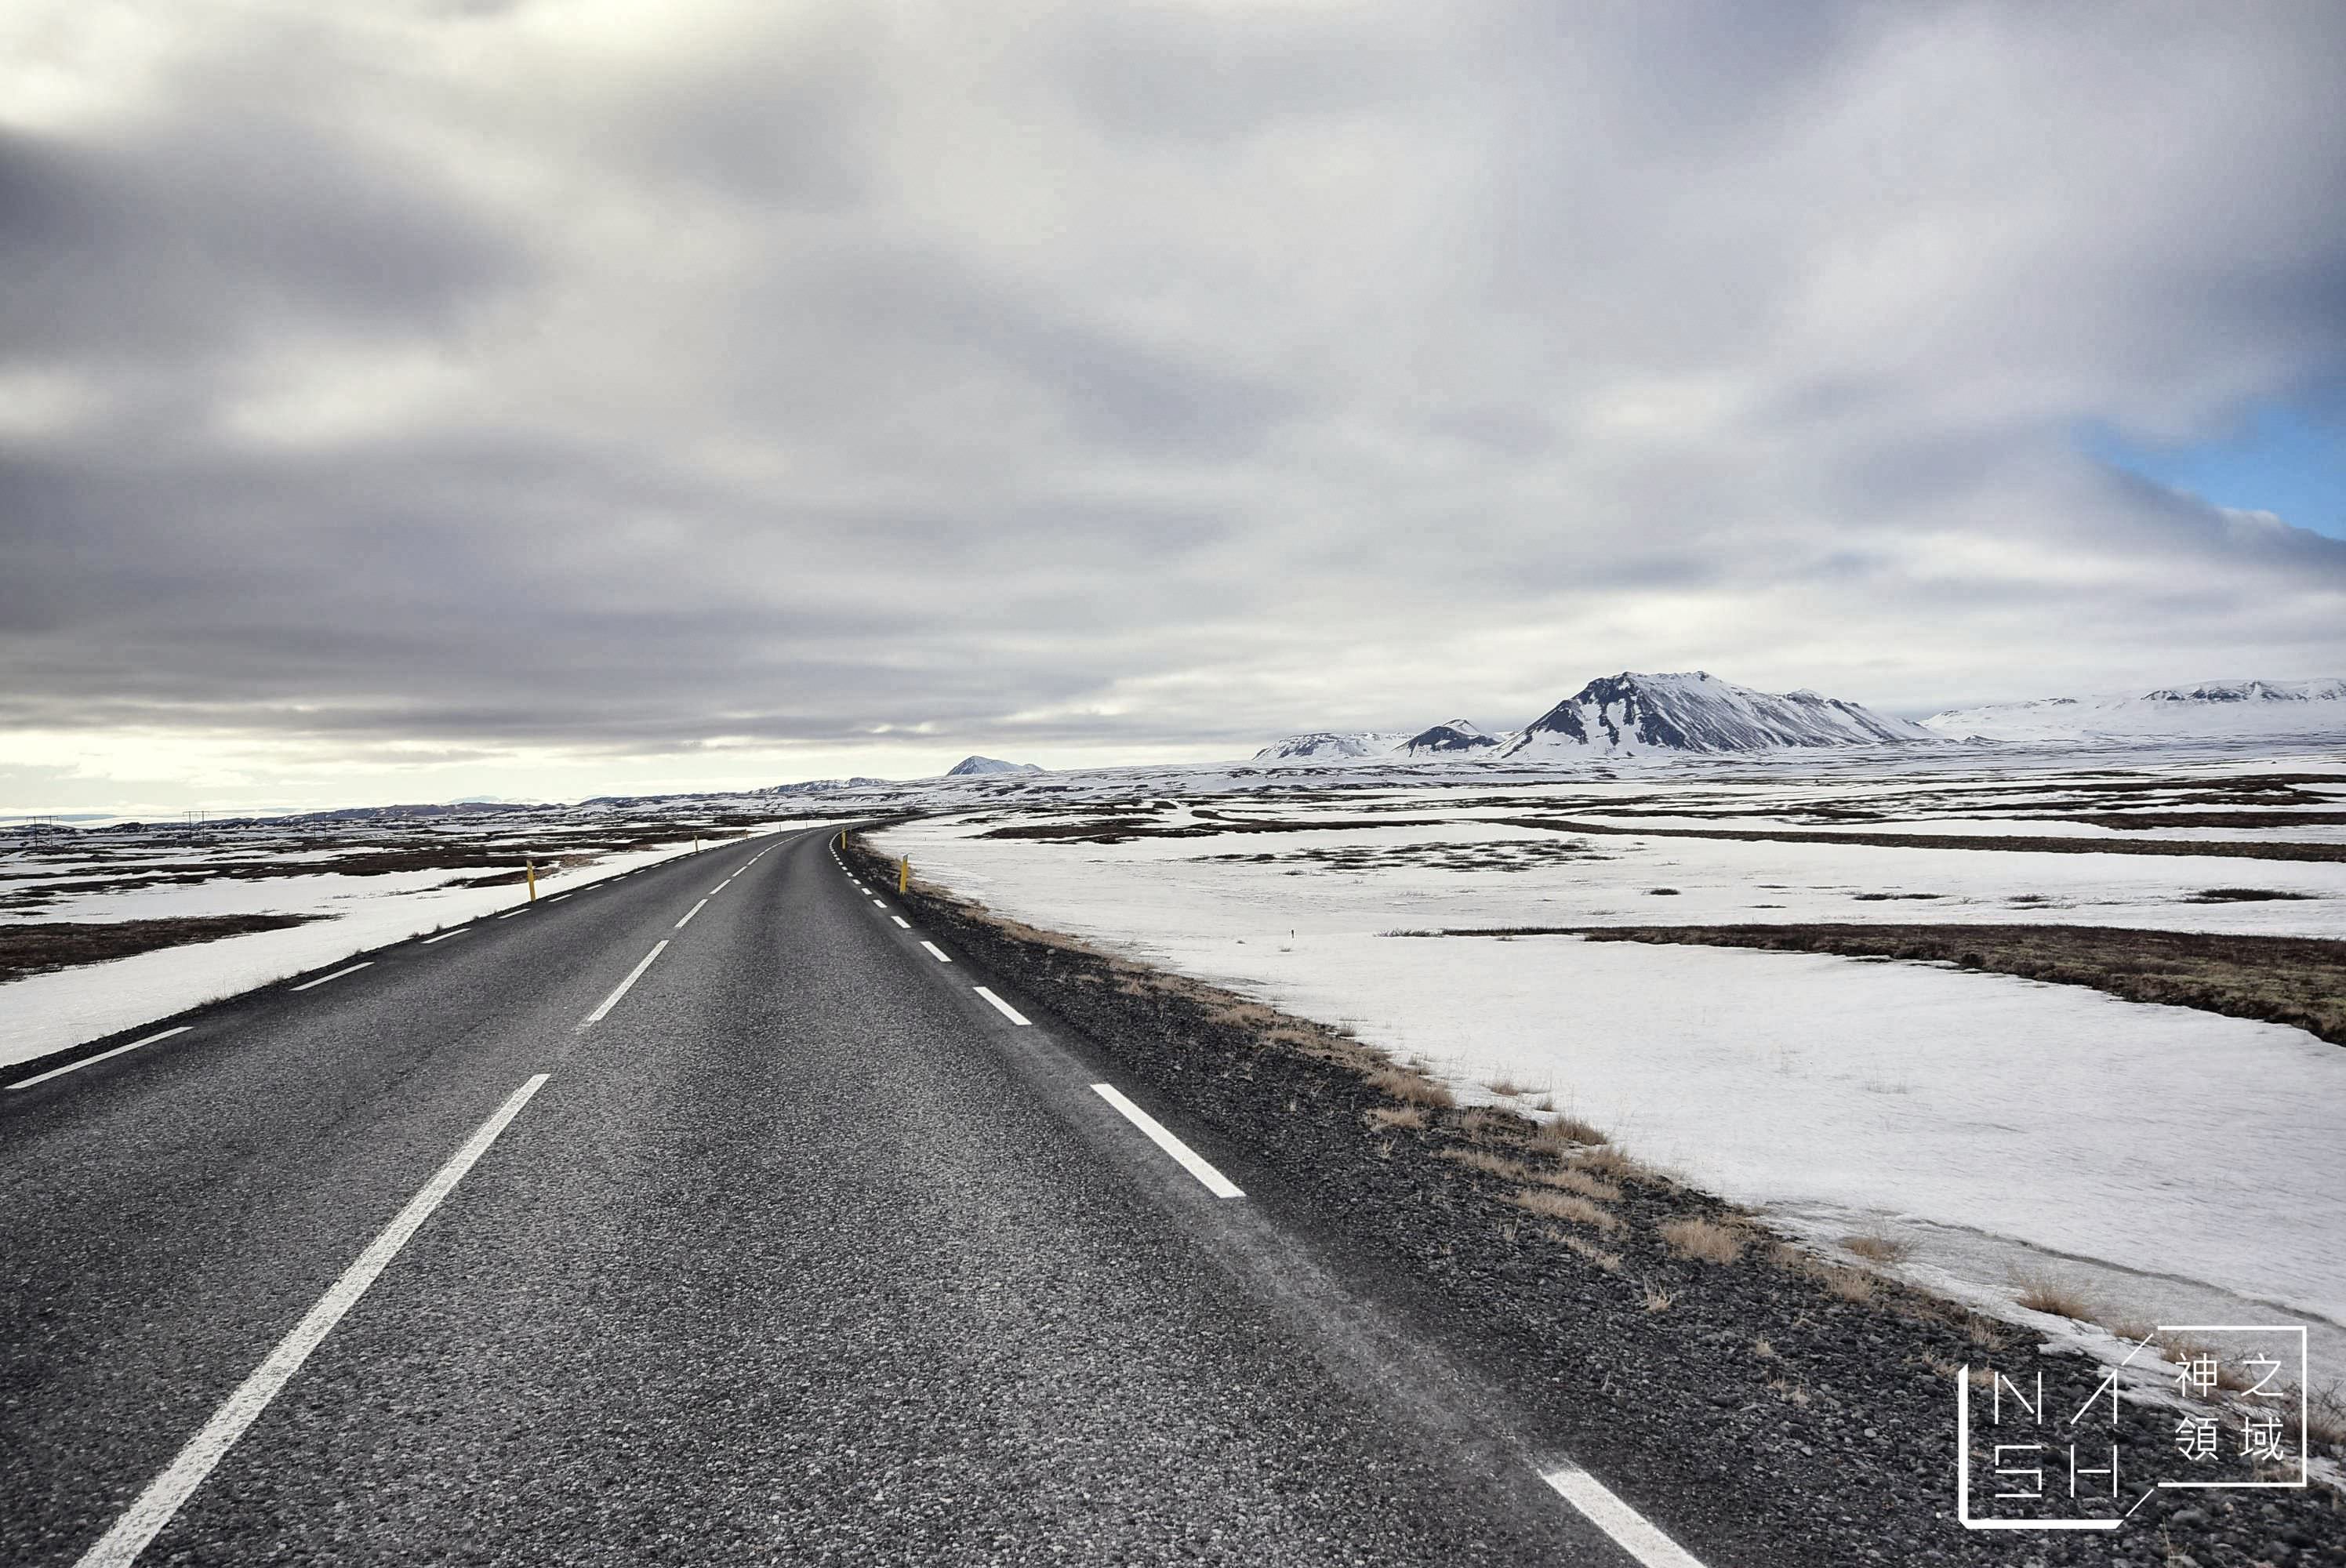 Seydisfjordur,冰島東部峽灣小鎮,白日夢冒險王滑板公路,冰島自由行環島景點推薦,塞濟斯菲厄澤